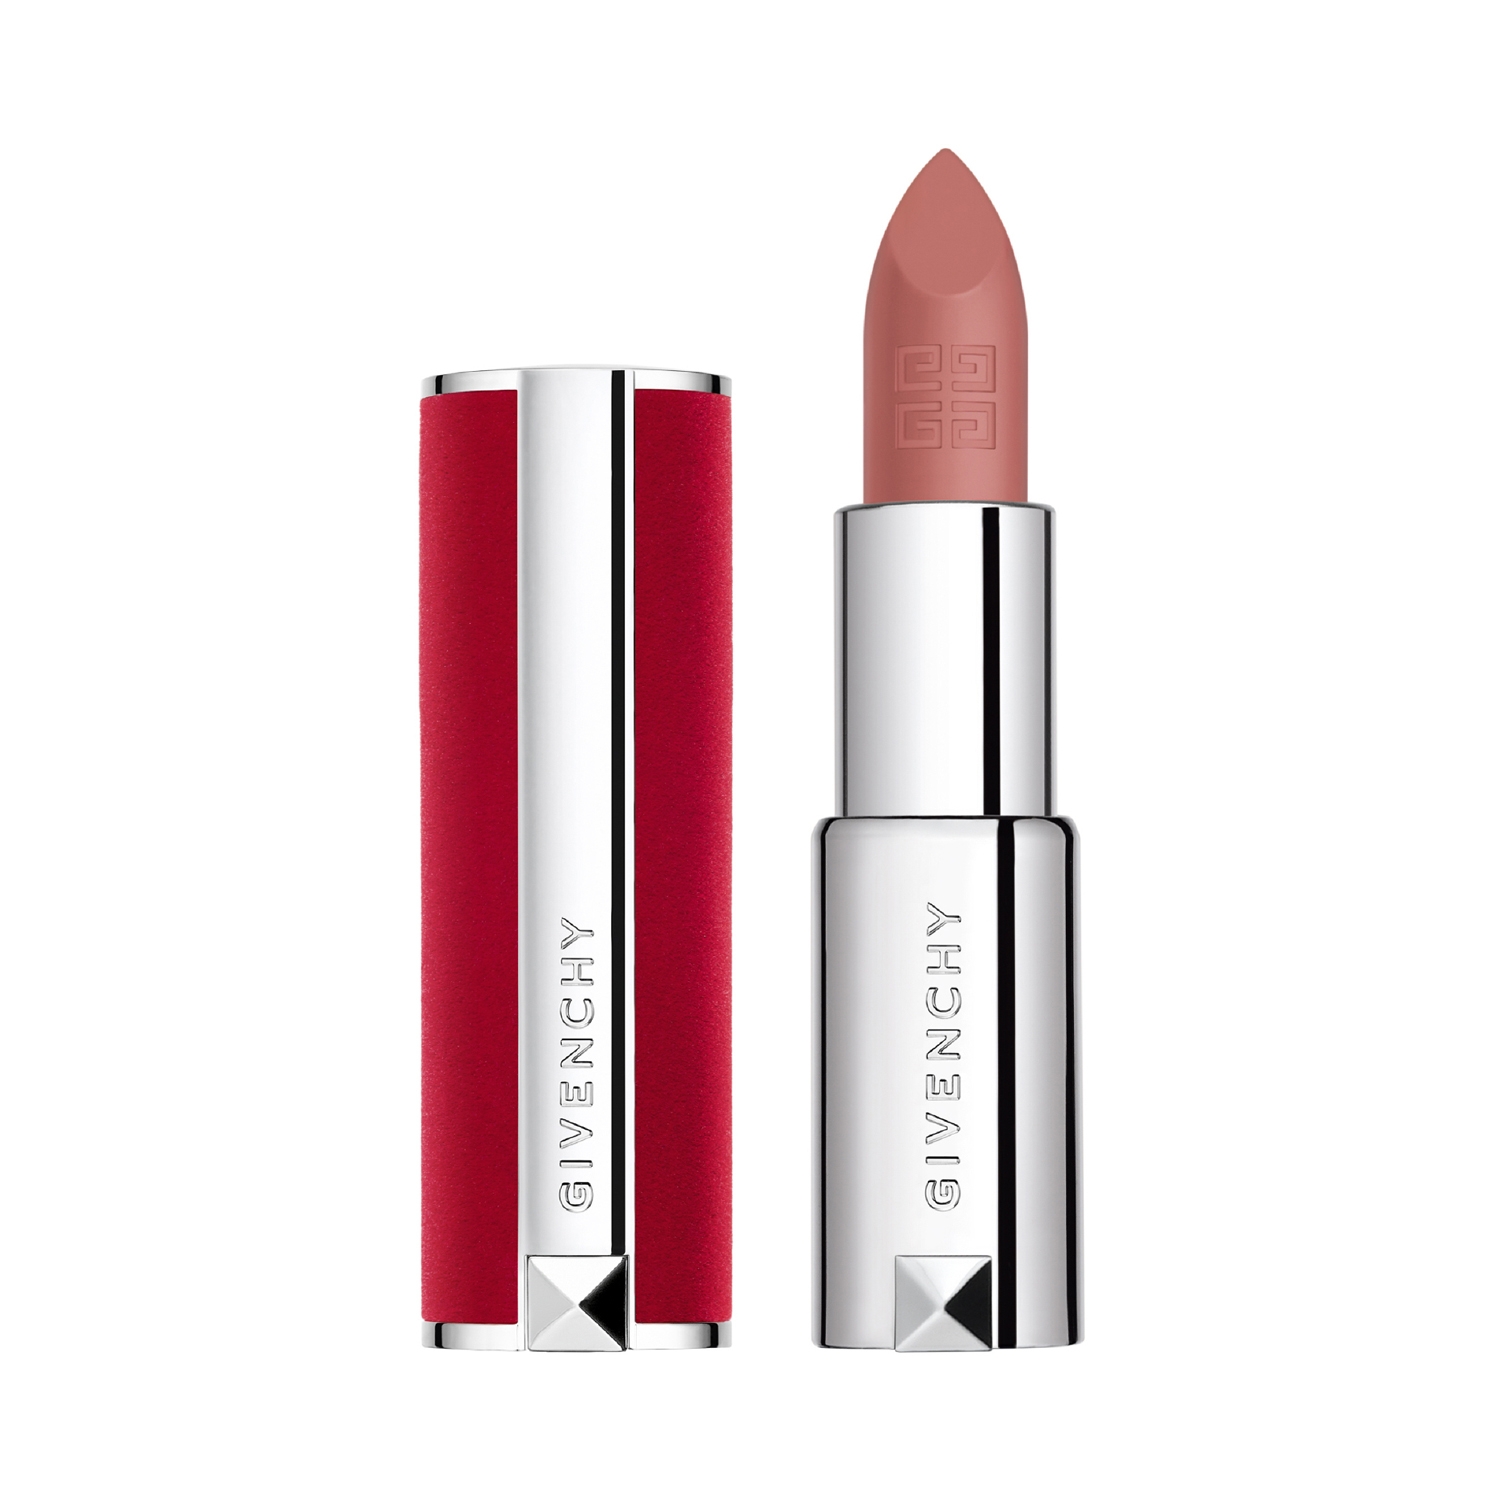 Givenchy | Givenchy Le Rouge Deep Velvet Lipstick - N 10 Beige Nu (3.4g)